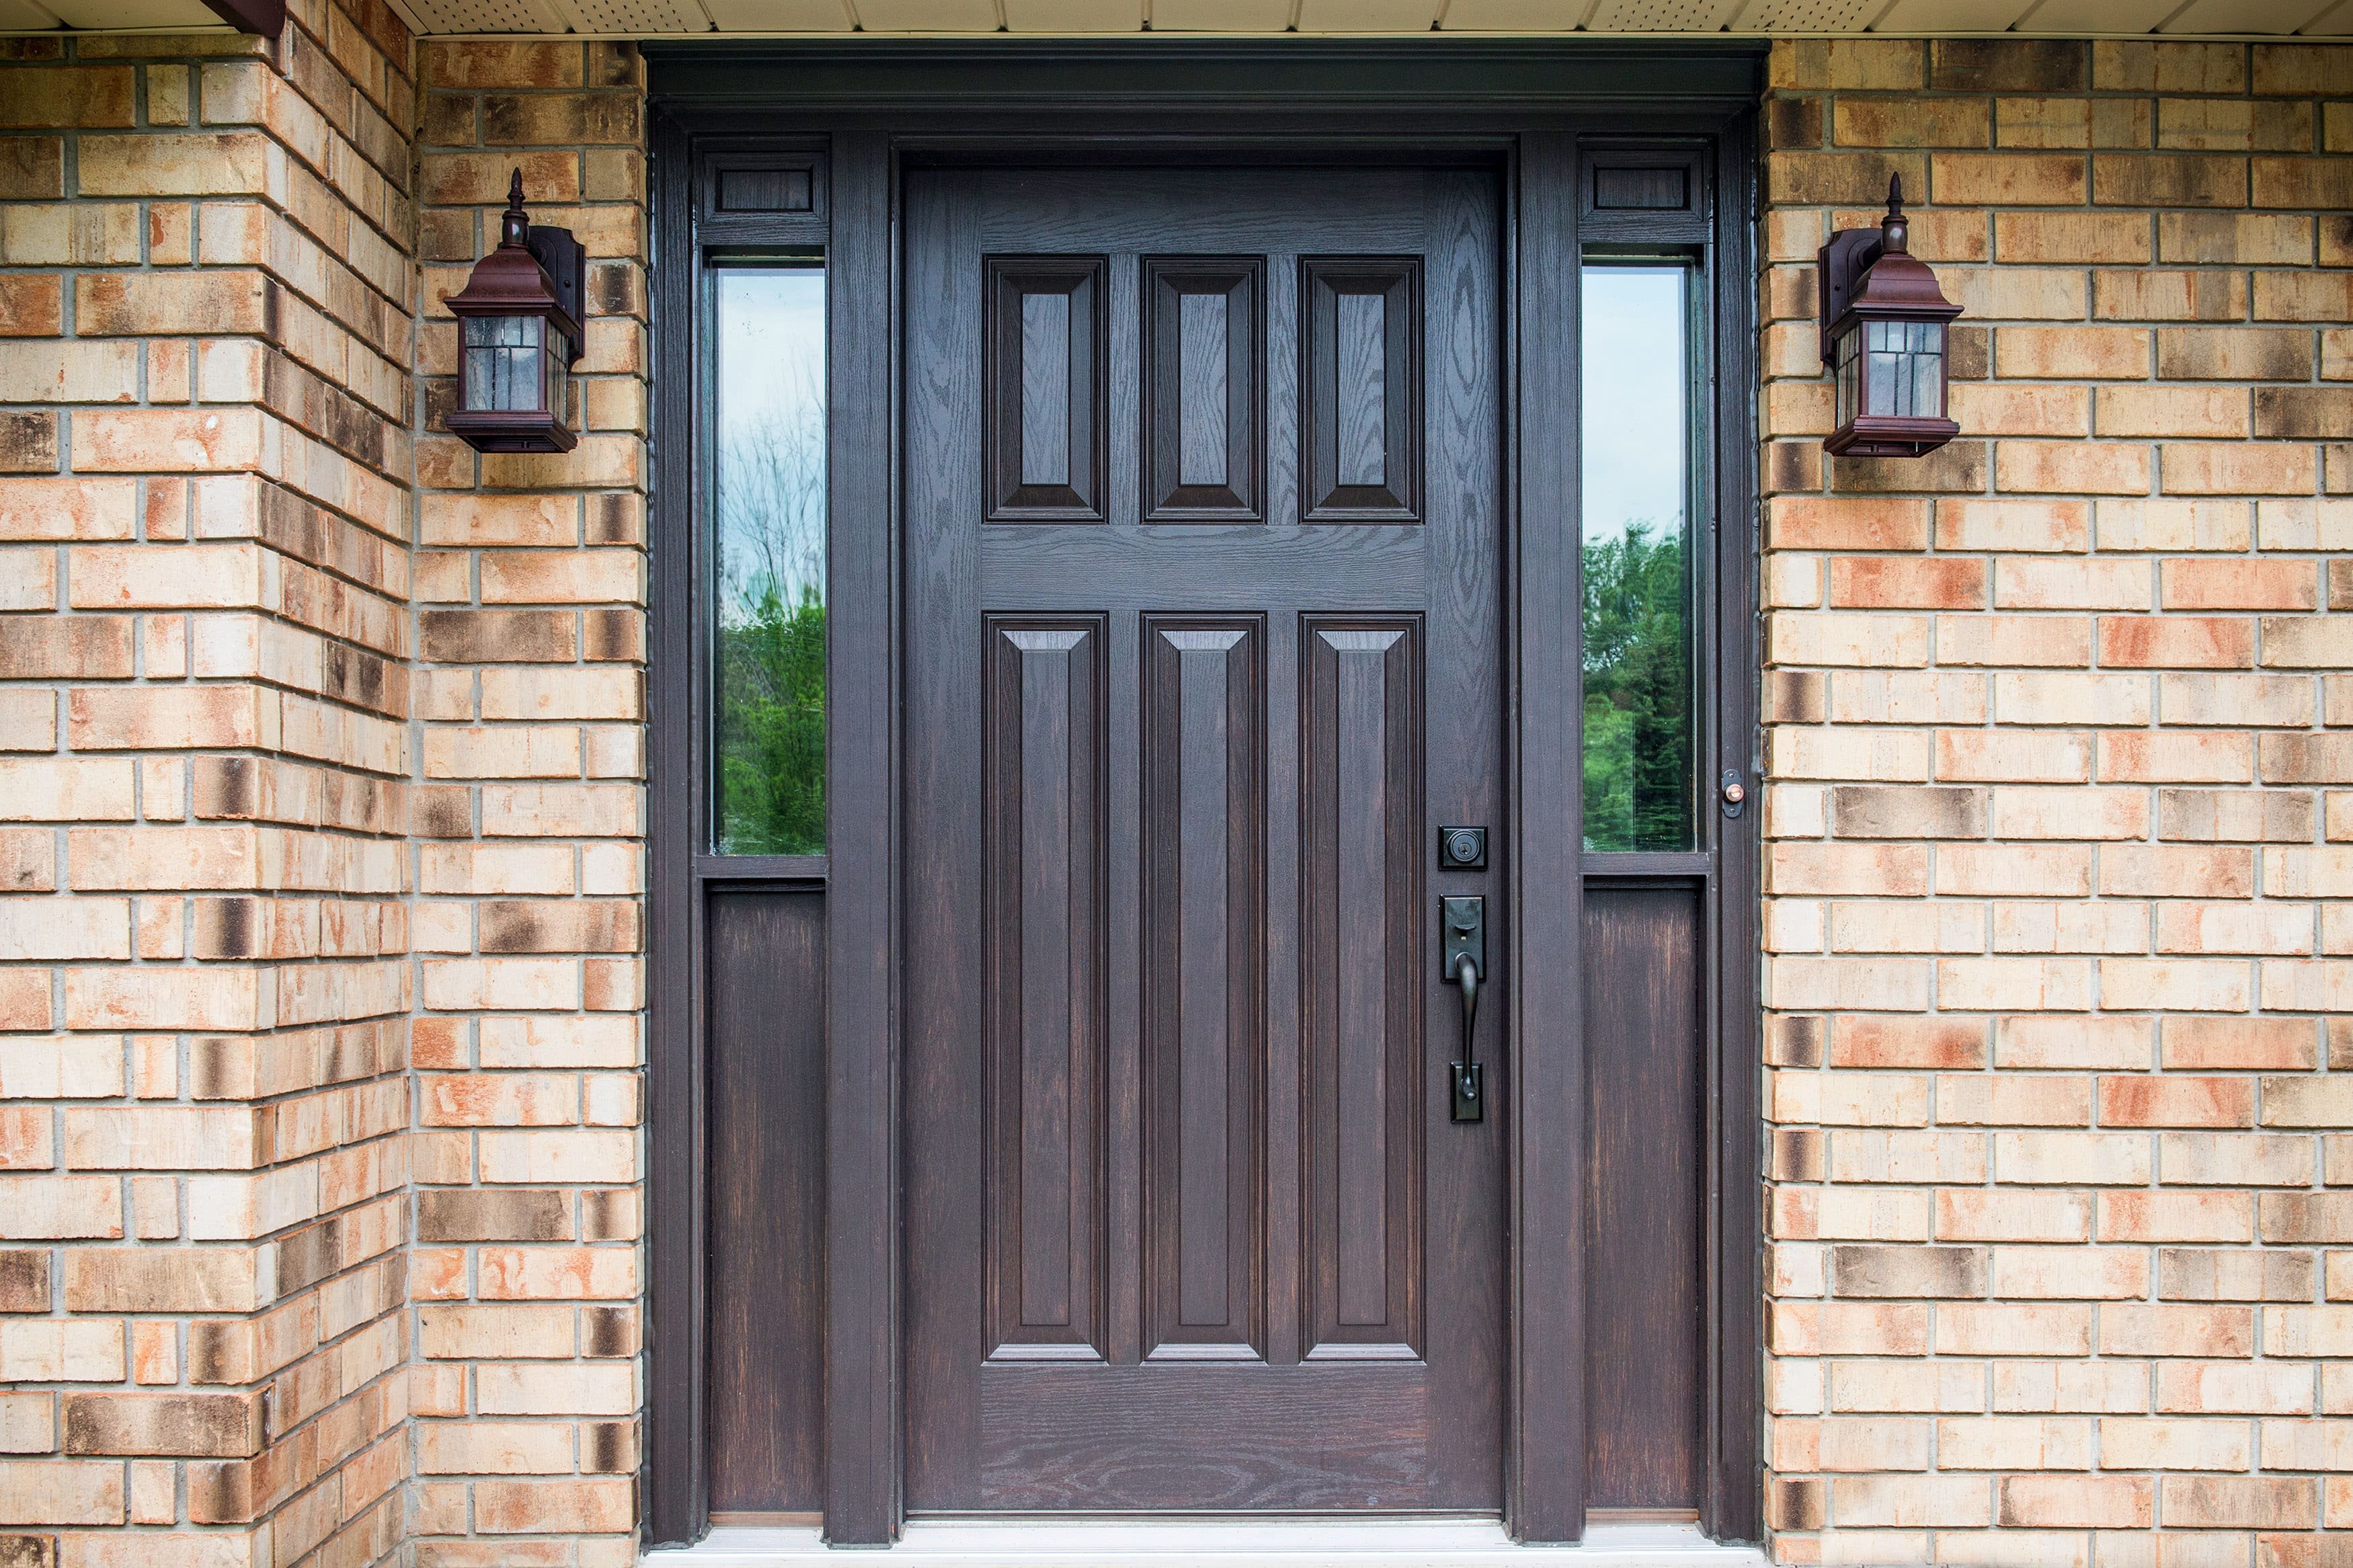 Close Up of Entry Way of Home Showcasing New Custom Made Fiberglass Entry Door